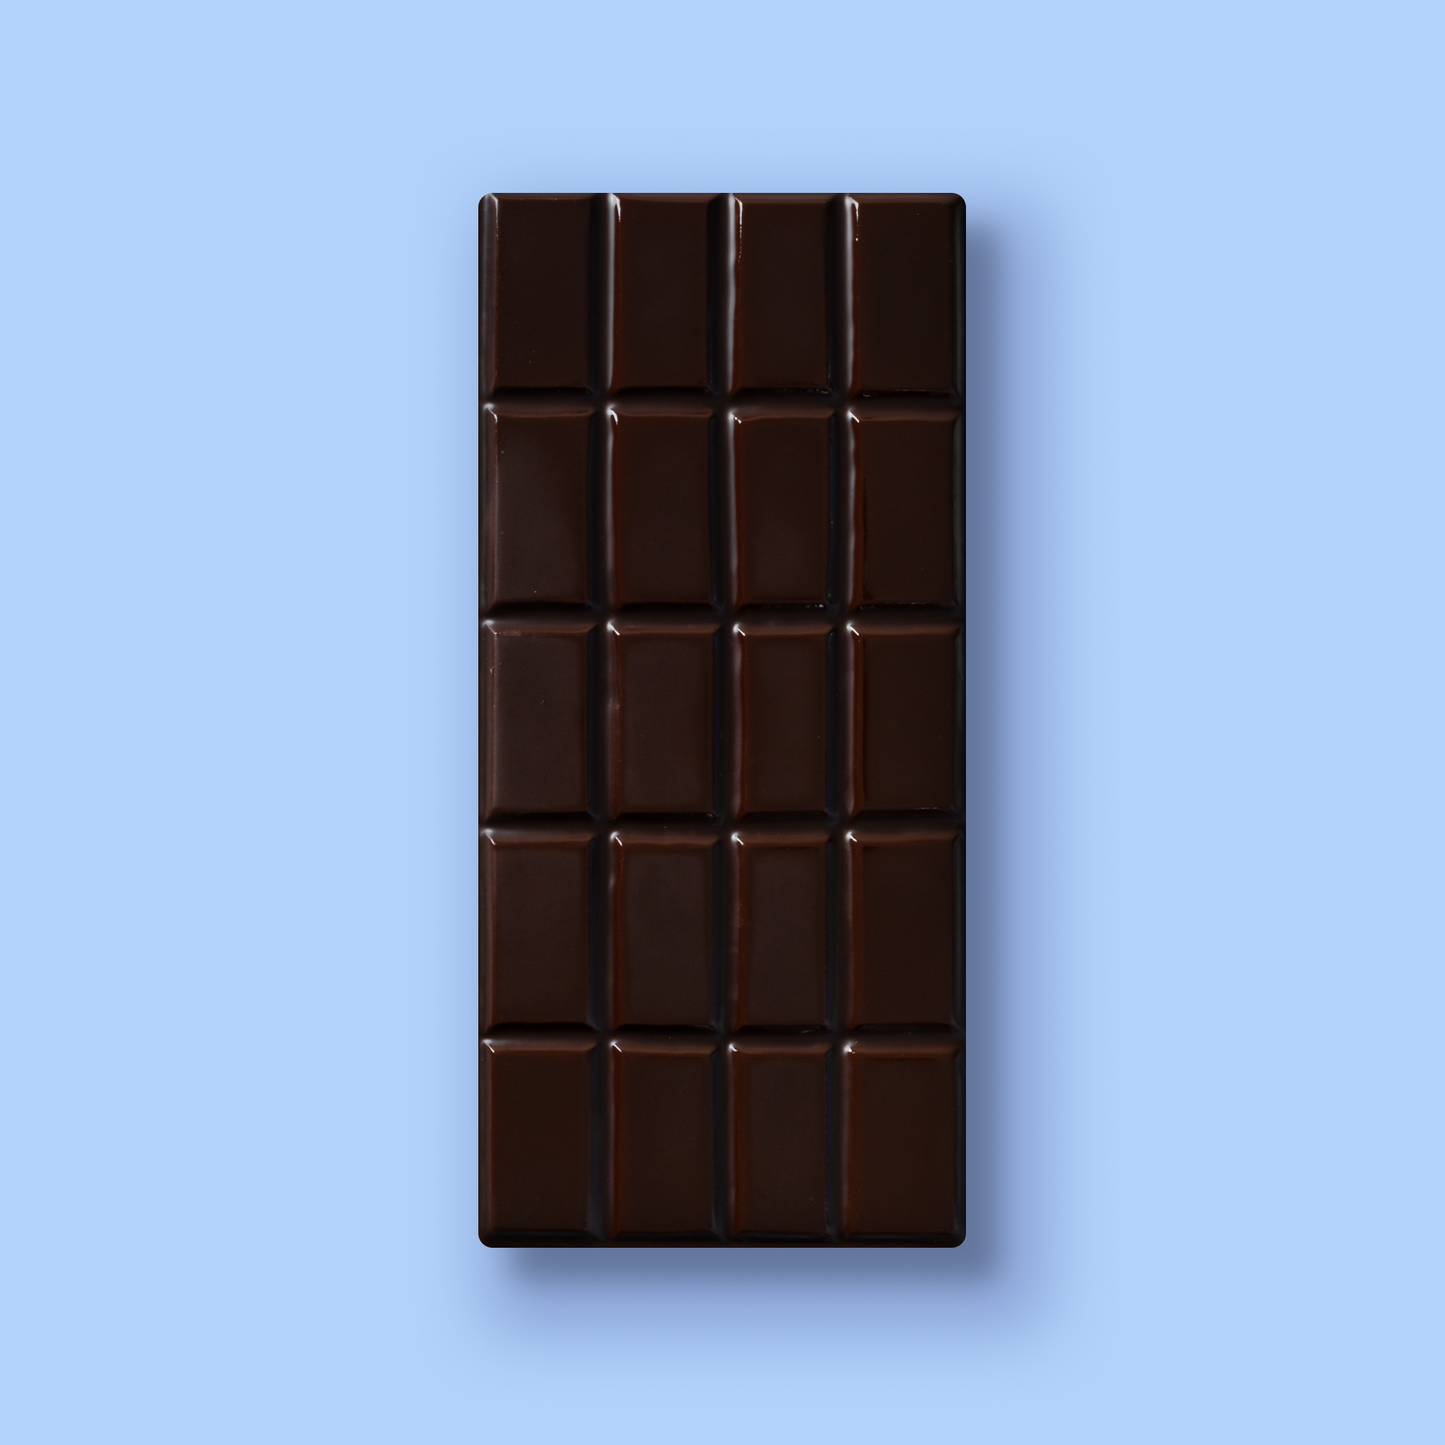 Dark chocolate bar variety 12 pack for Amazon